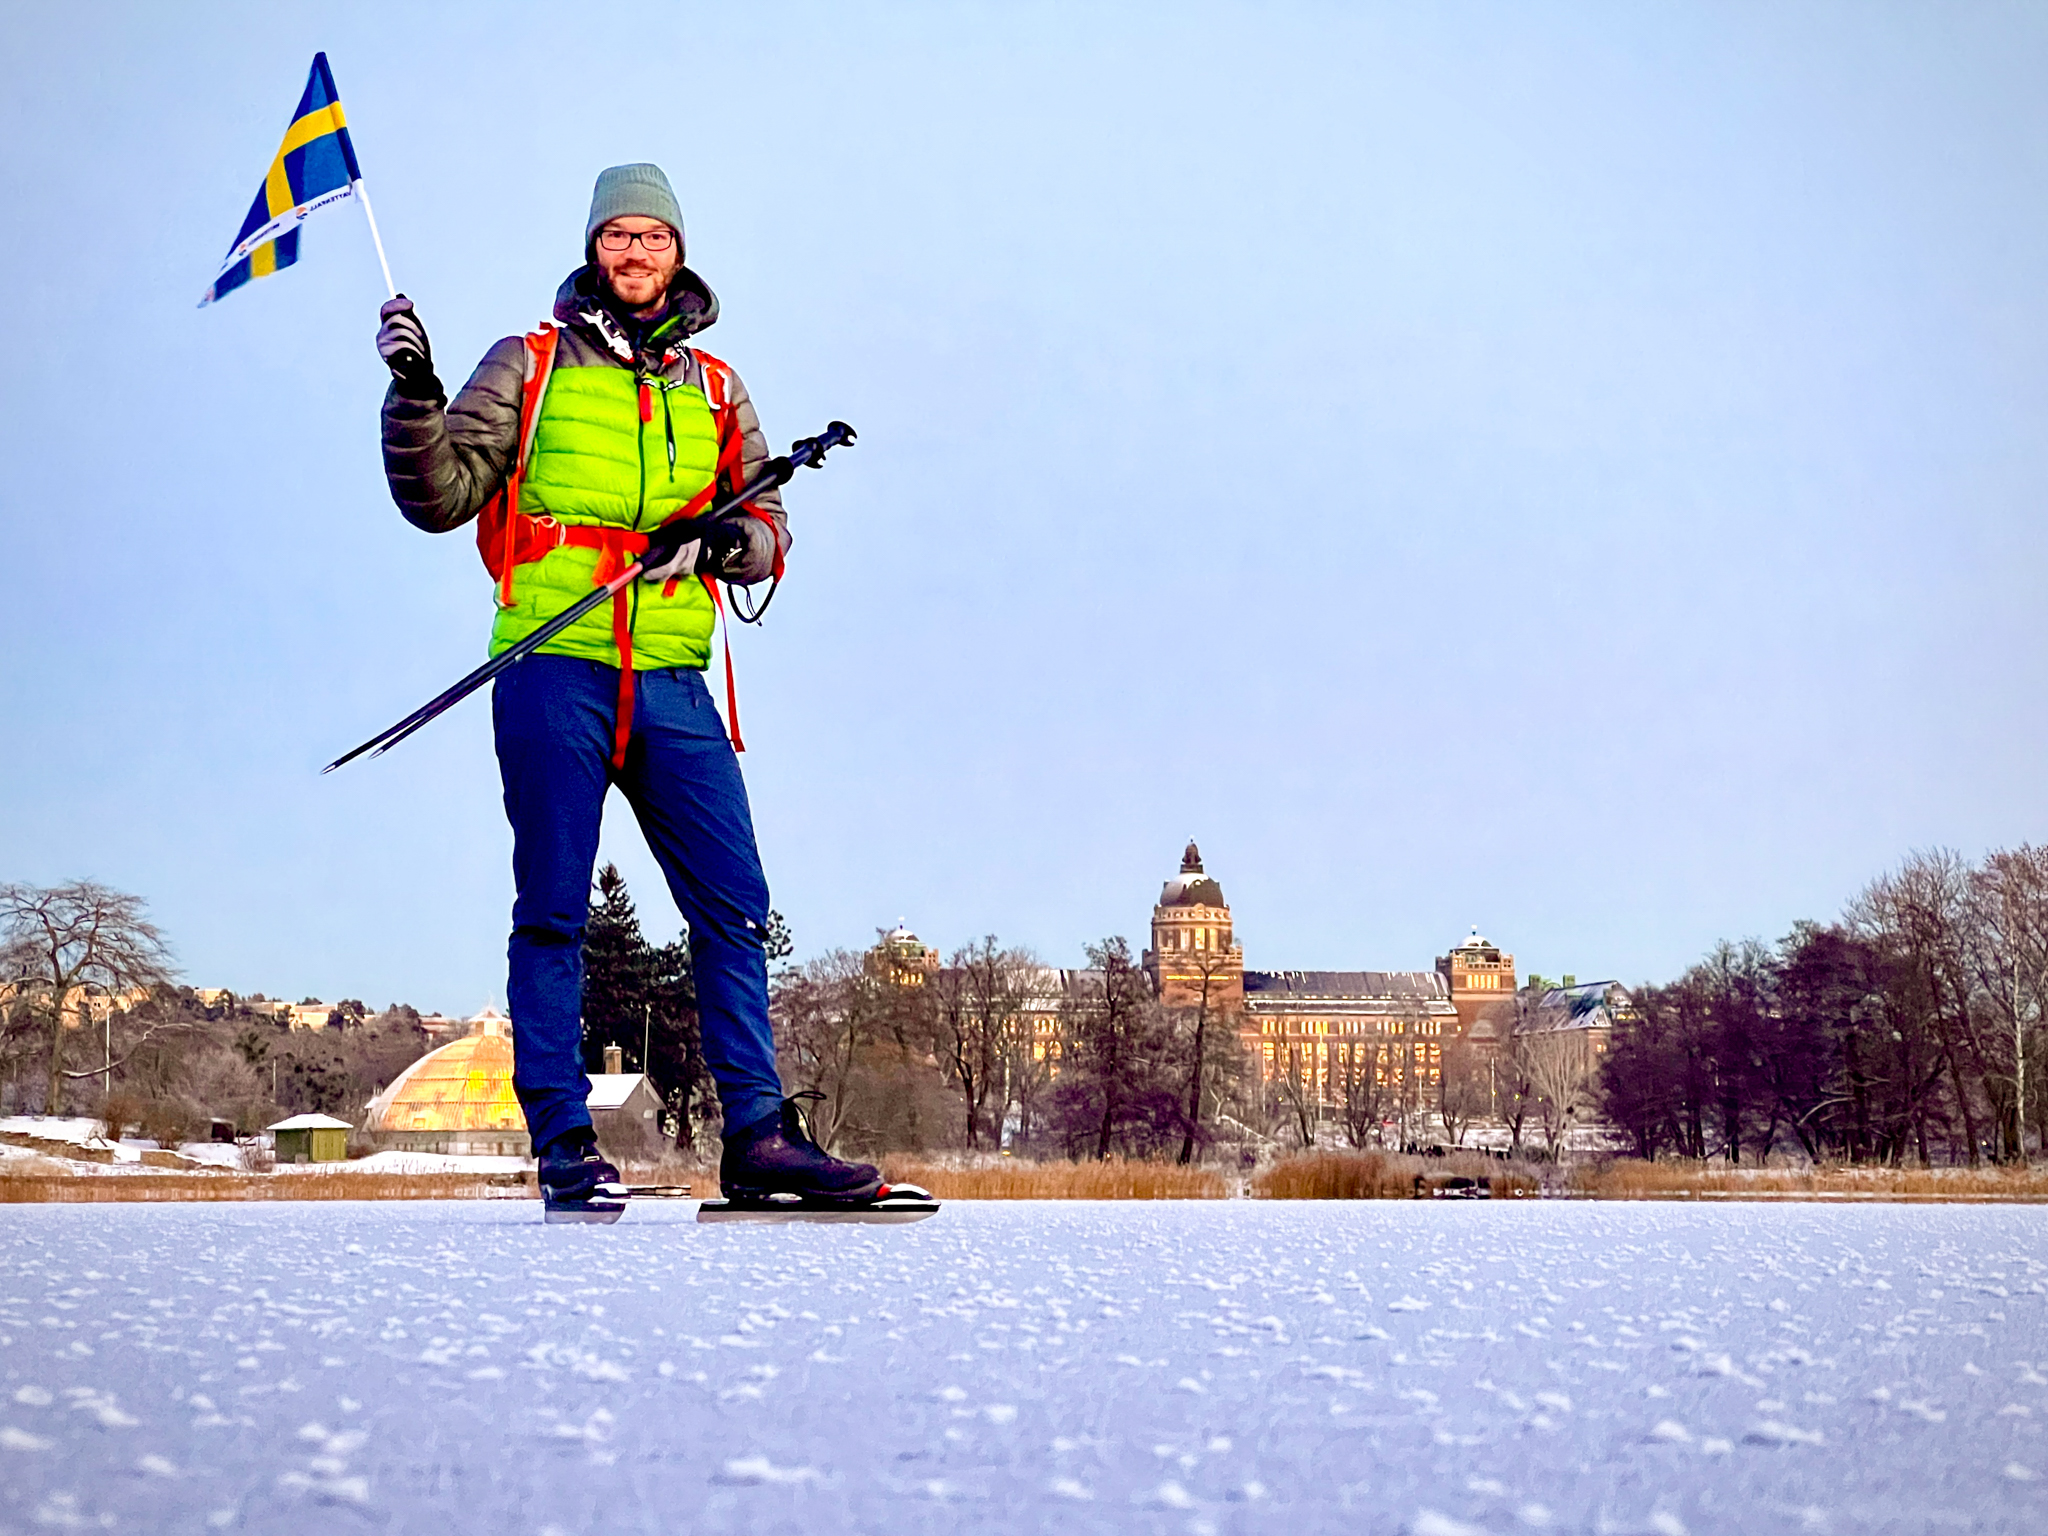 Skating on Brunnsviken with Swedish flag